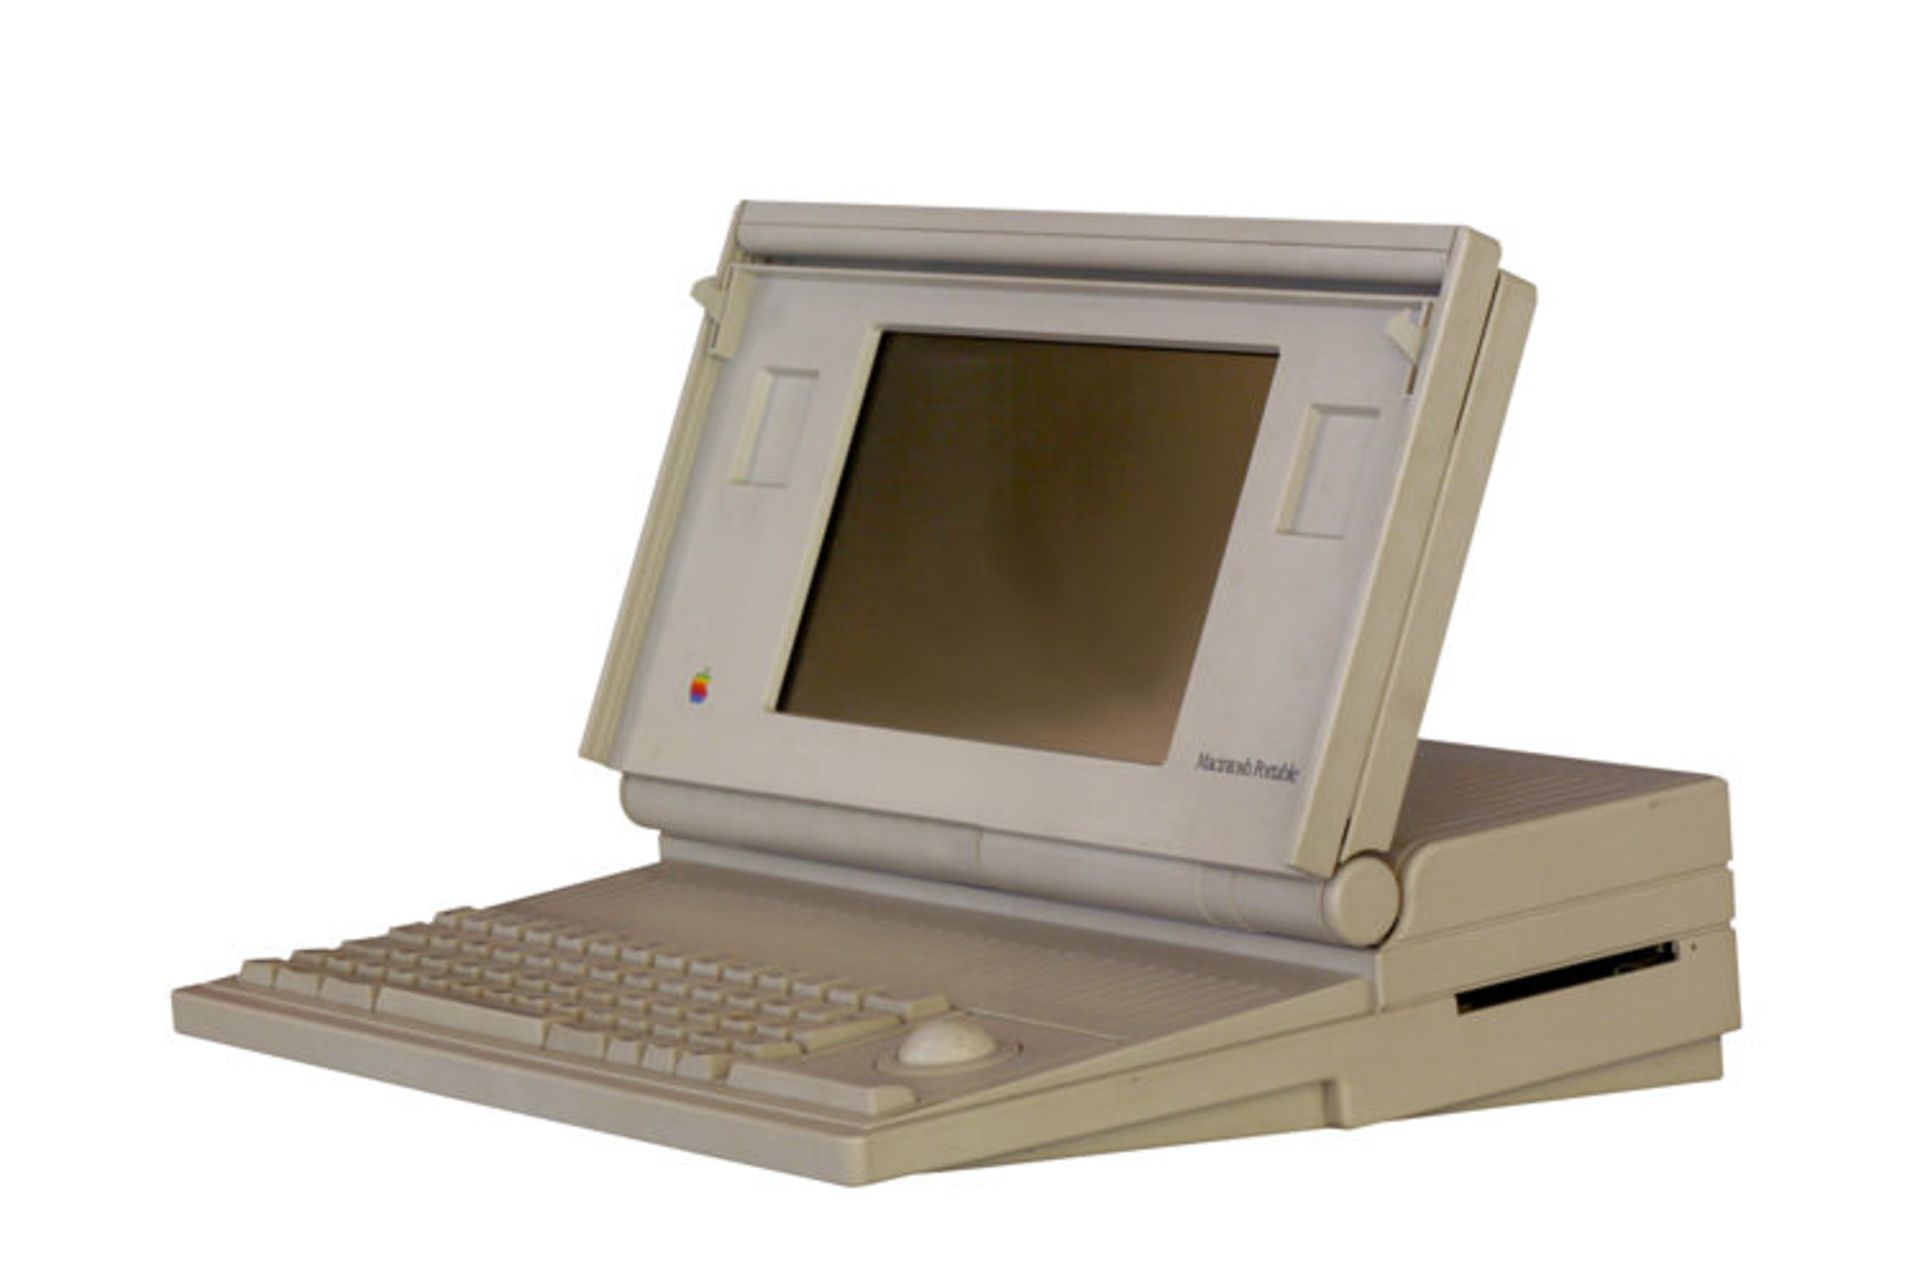 مرجع متخصصين ايران مكينتاش Macintosh Portable